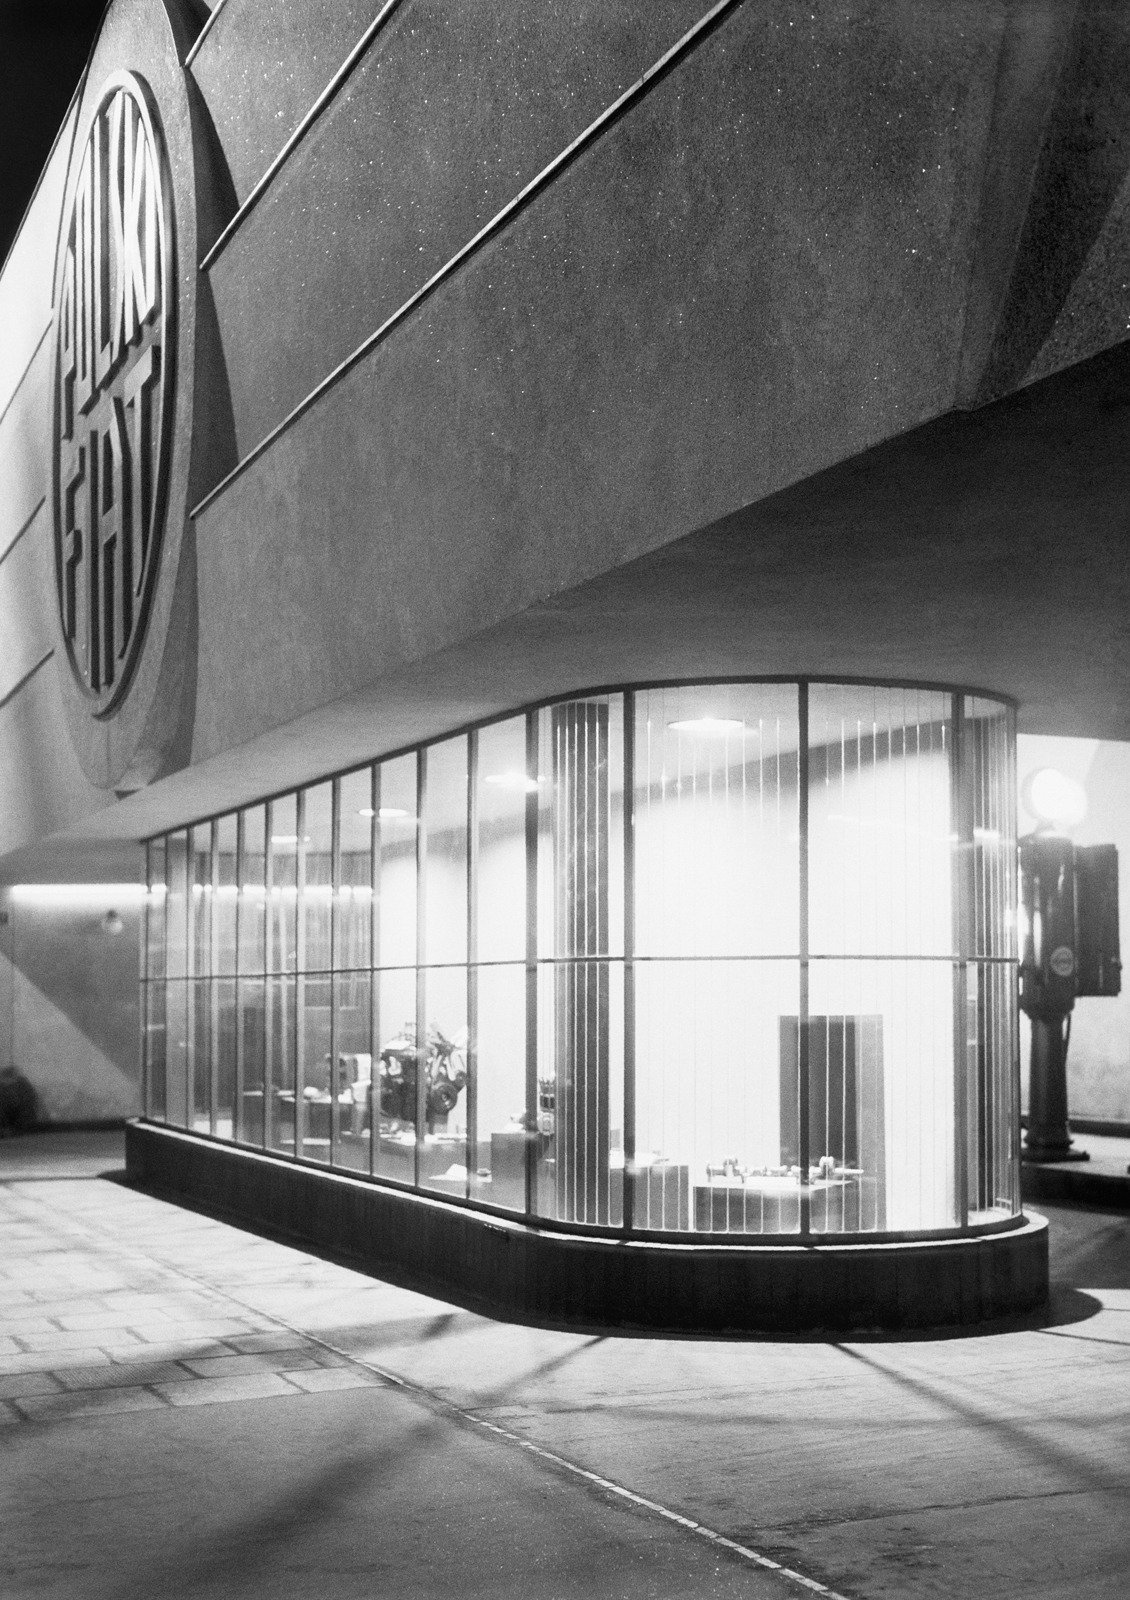 Salon Polskiego Fiata przy ulicy Królewskiej, Warszawa. Architekt Edward Seydenbeuthel. Fot. Czesław Olszewski/Instytut Sztuki PAN